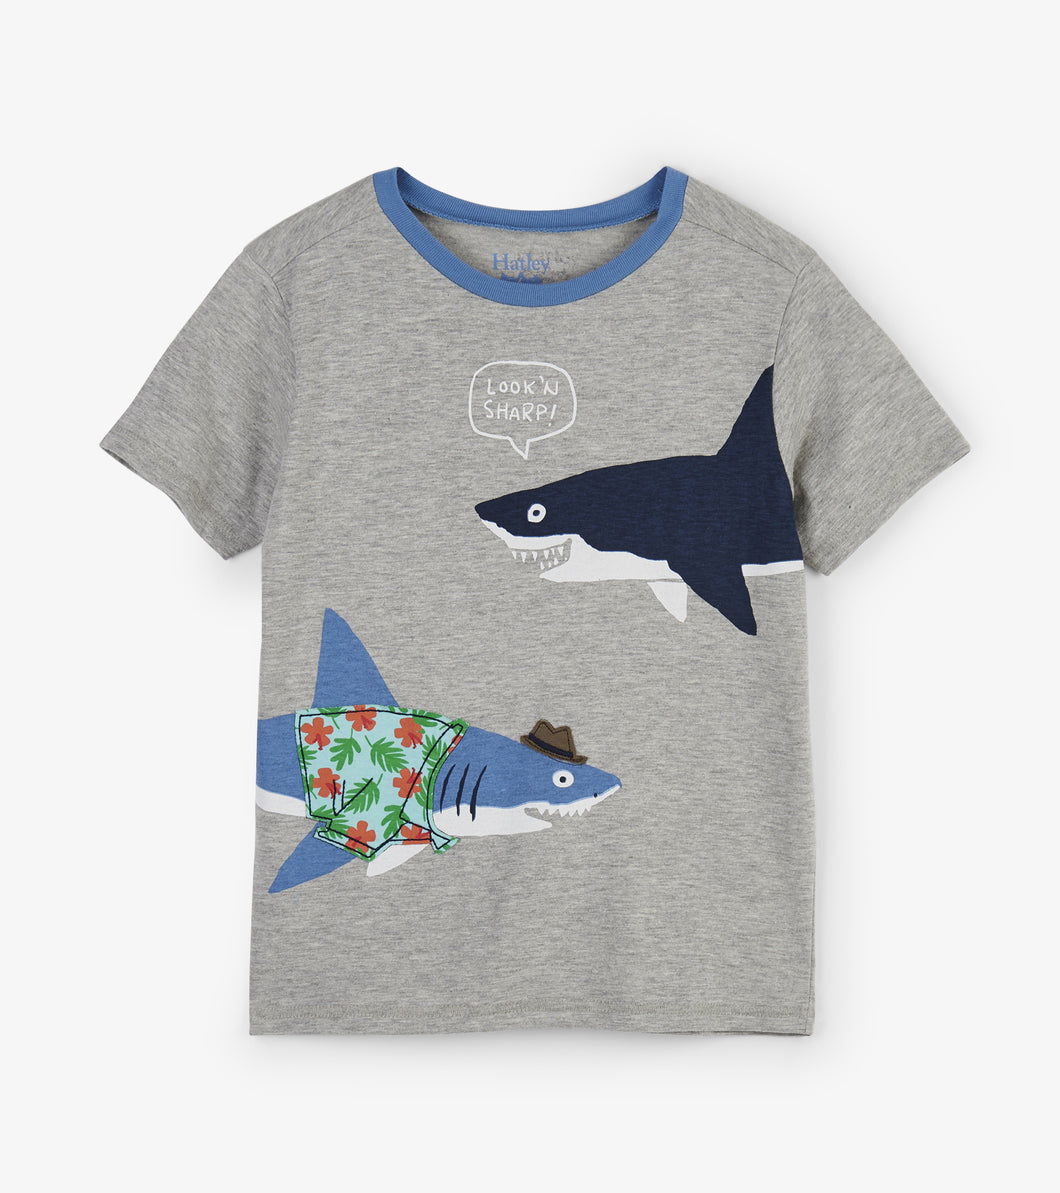 Sharp Dressed Shark Graphic Tee